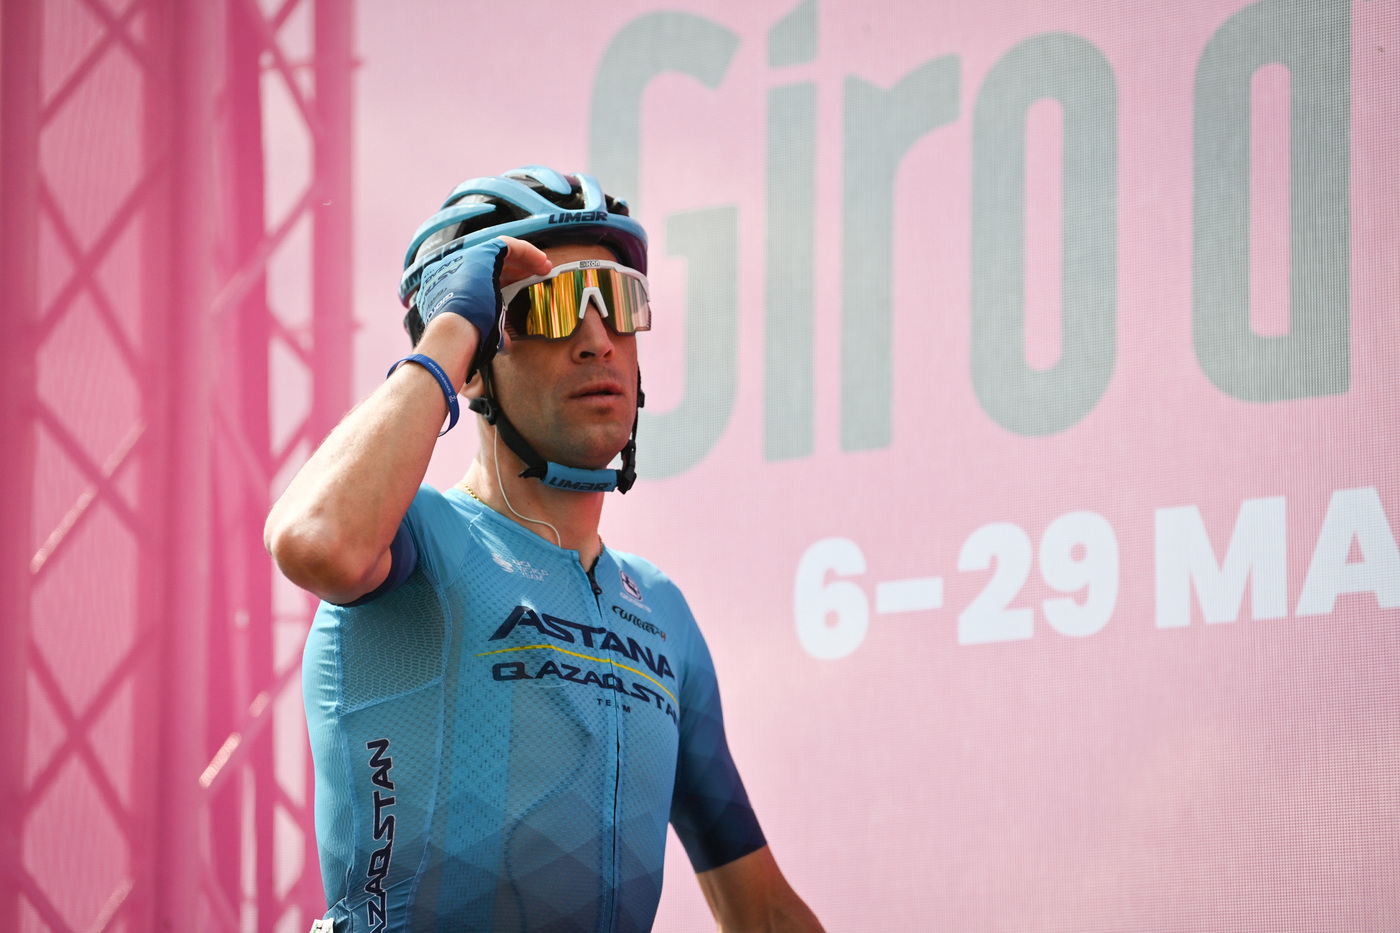 Giro d’Italia 2022, Vincenzo Nibali furente: “Non potevo fare di più. Con queste gambe non posso neanche vincere una tappa”